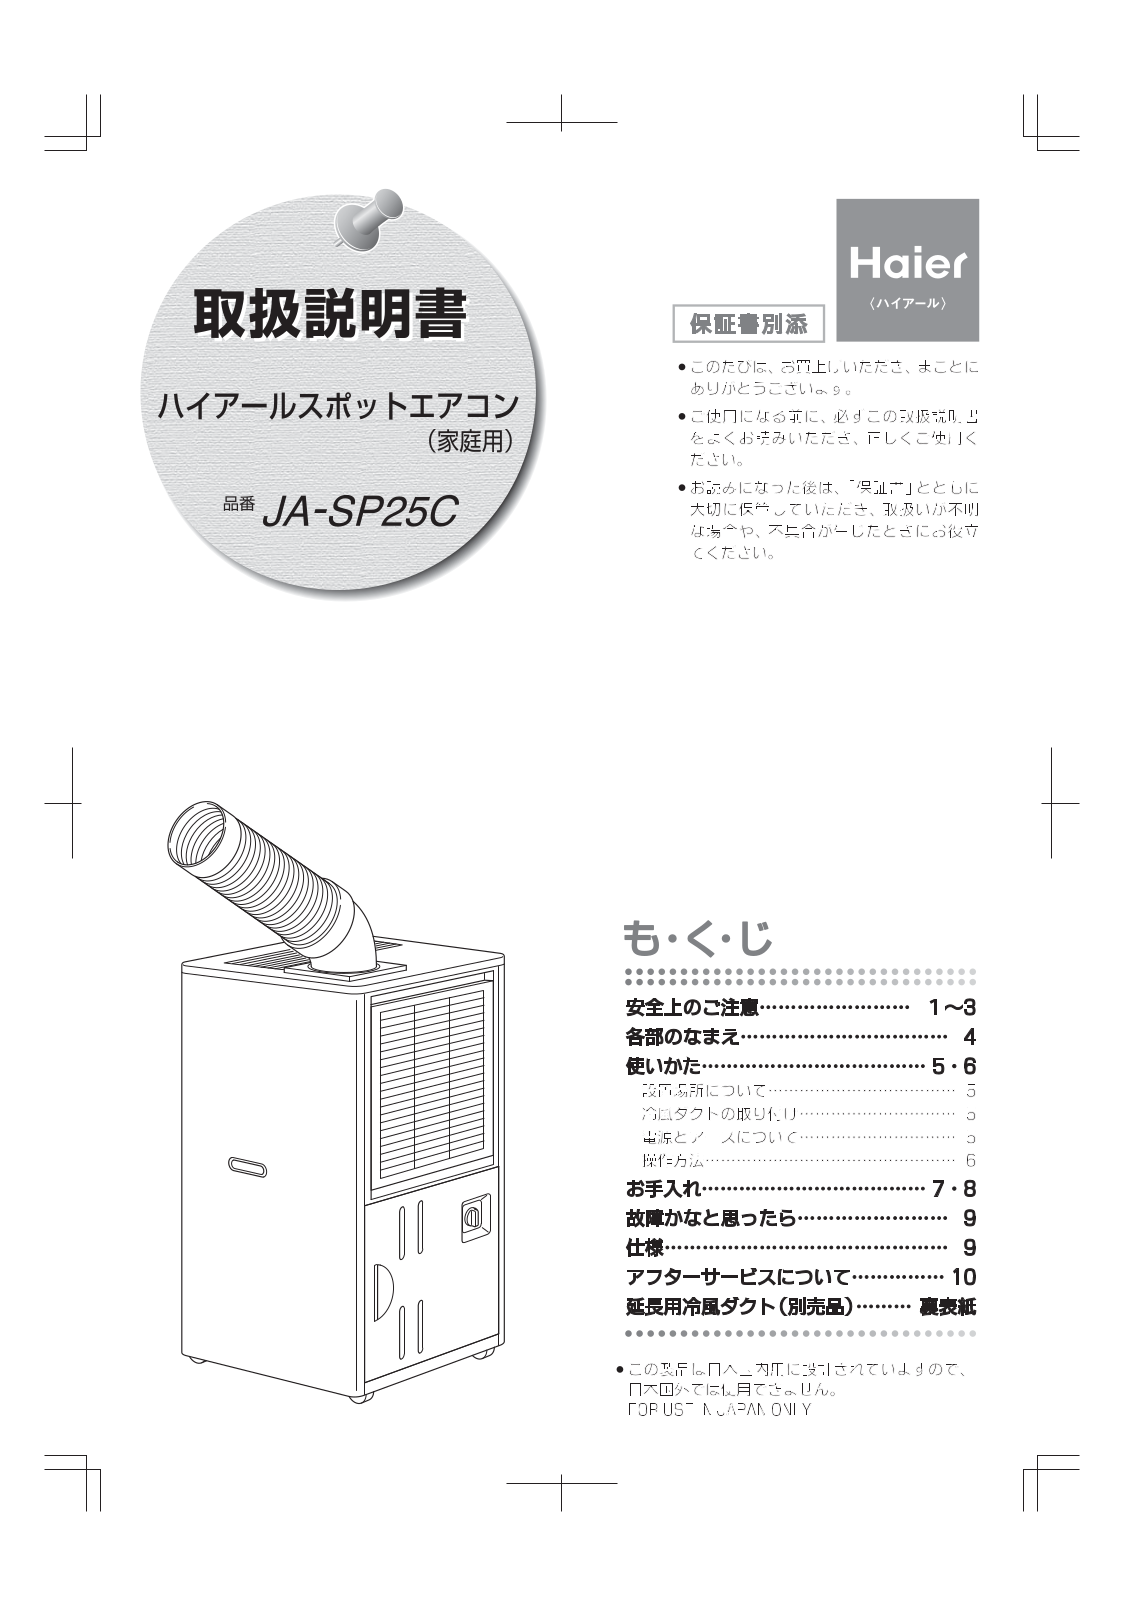 Haier HM-09C12-R2 Manual